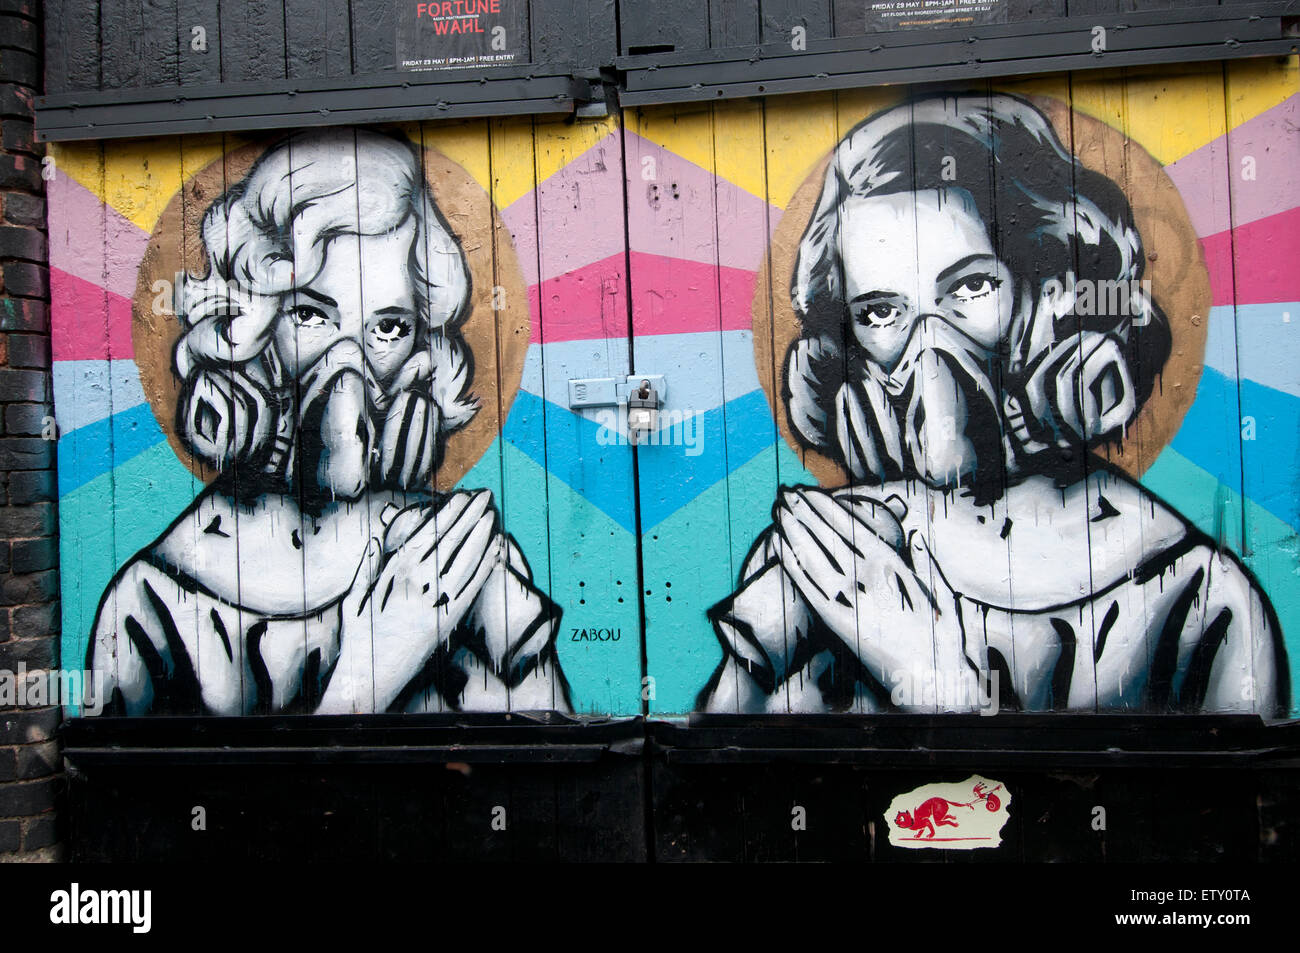 Brick Lane. Arte di strada da Zabou che mostra due donne con maschere e bombolette spray Foto Stock